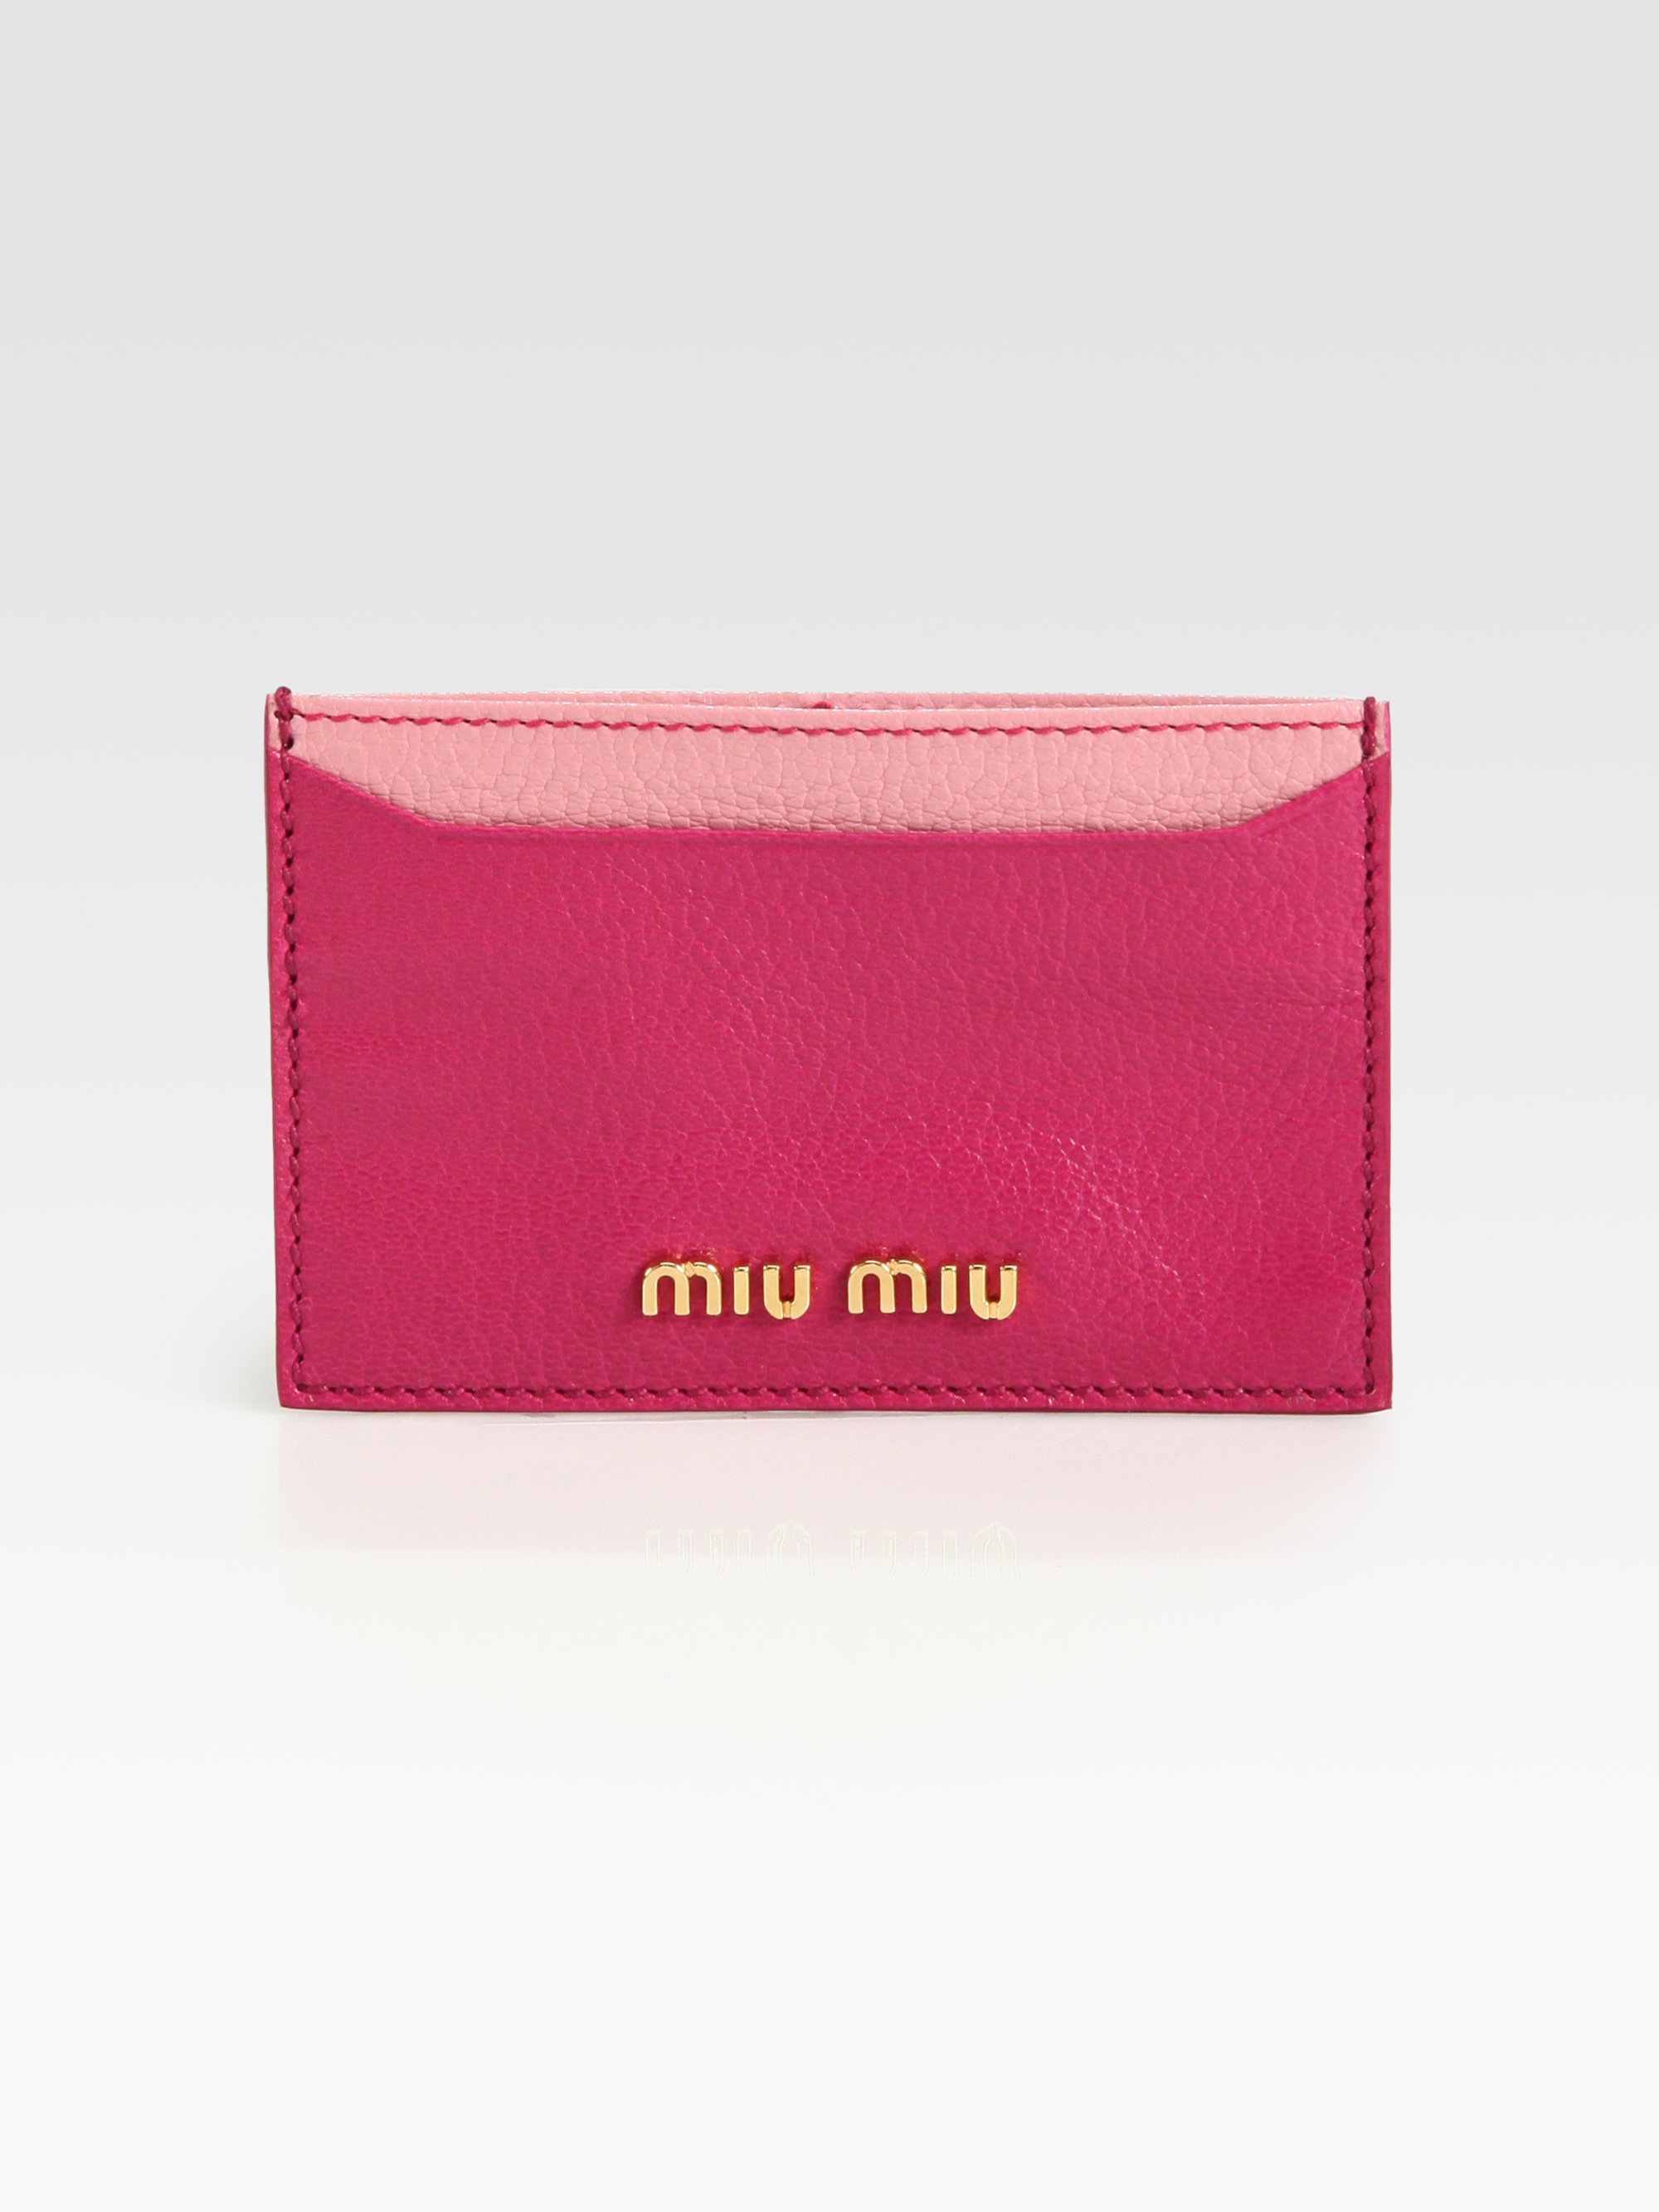 Miu Miu Madras Bicolor Card Case in Pink | Lyst